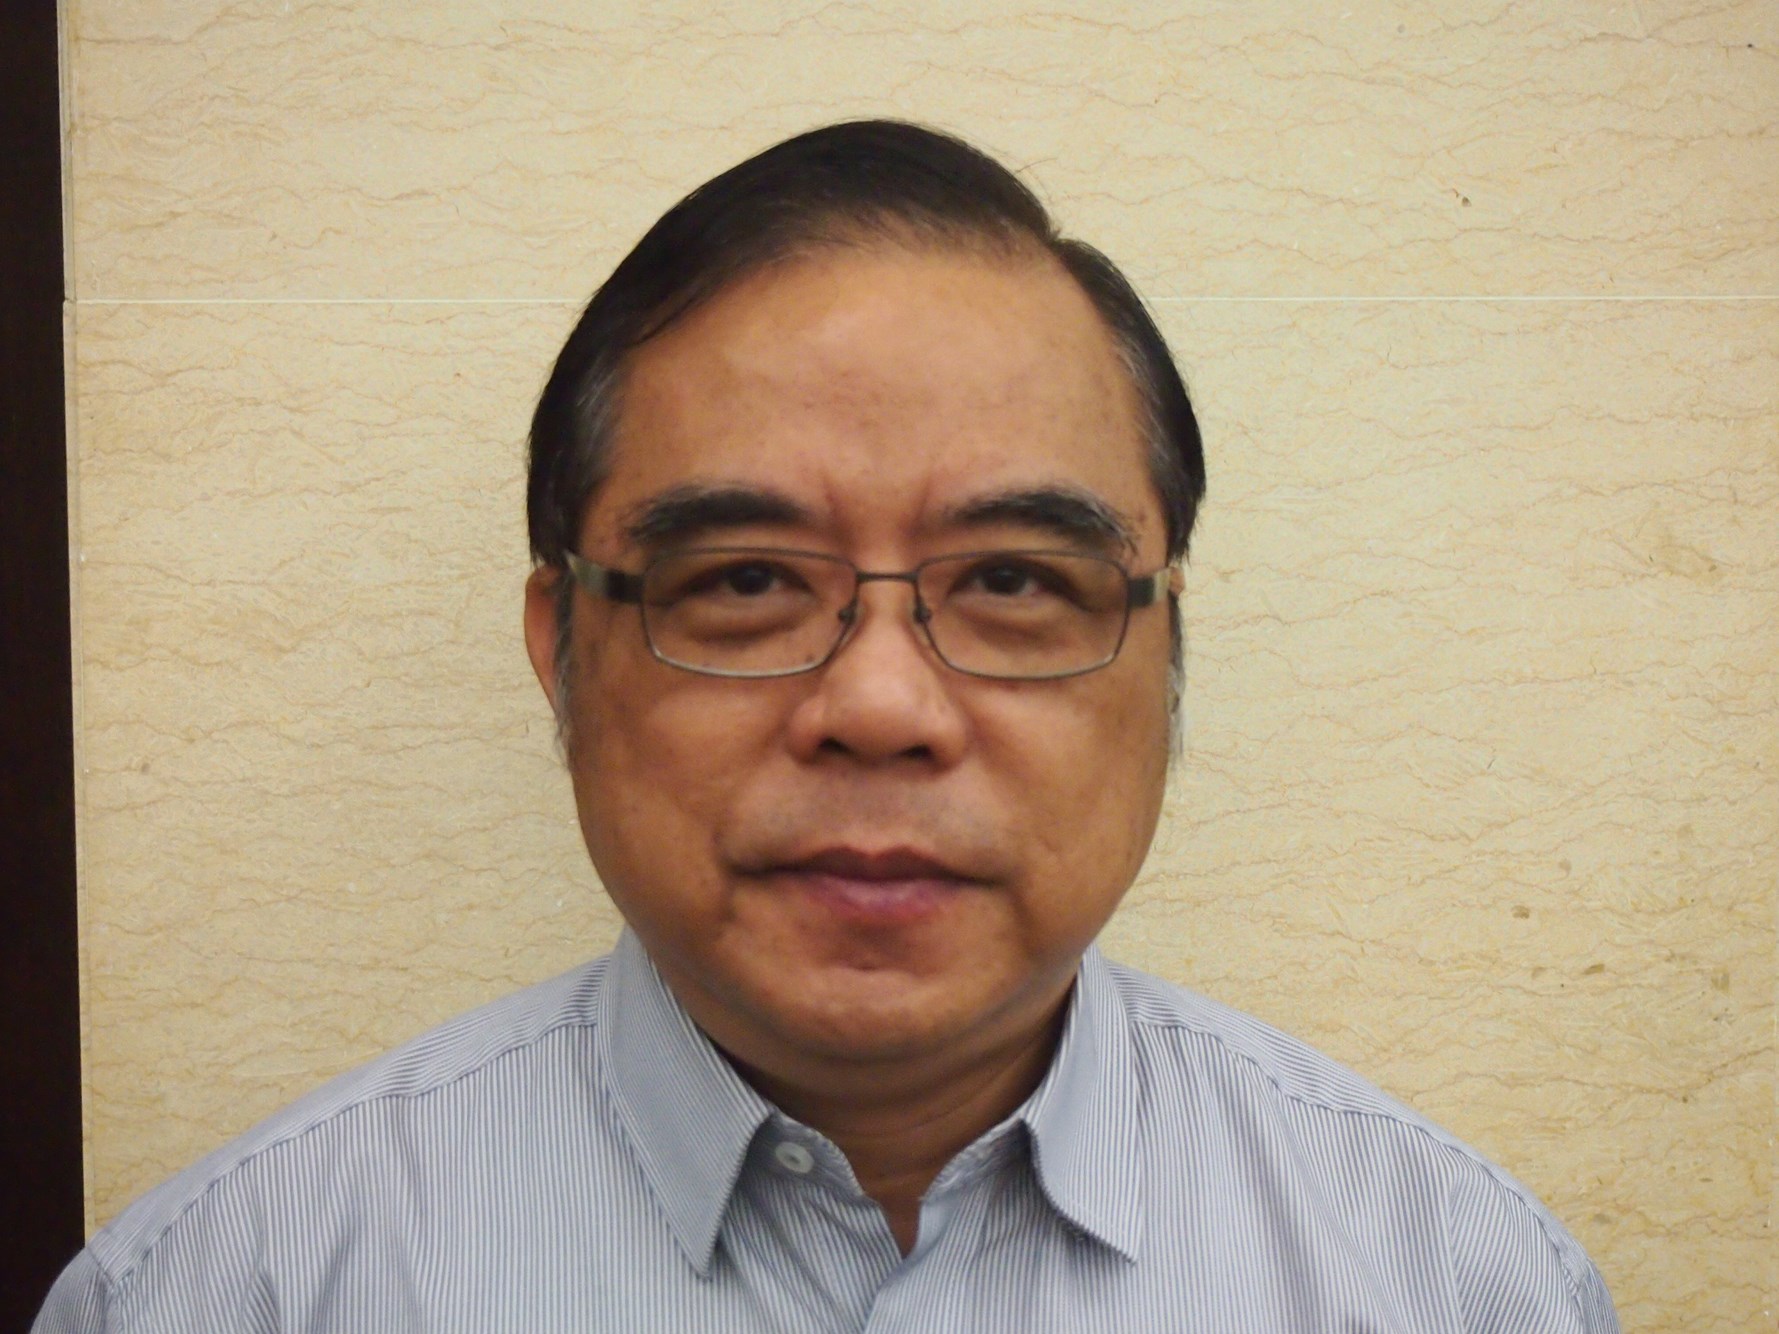 江 牧 师 早 年 毕 业 于 马 来 西 亚 圣 经 神 学 院 ( 马 圣 ) 及 新 加 坡 神 学 院 目 前 在